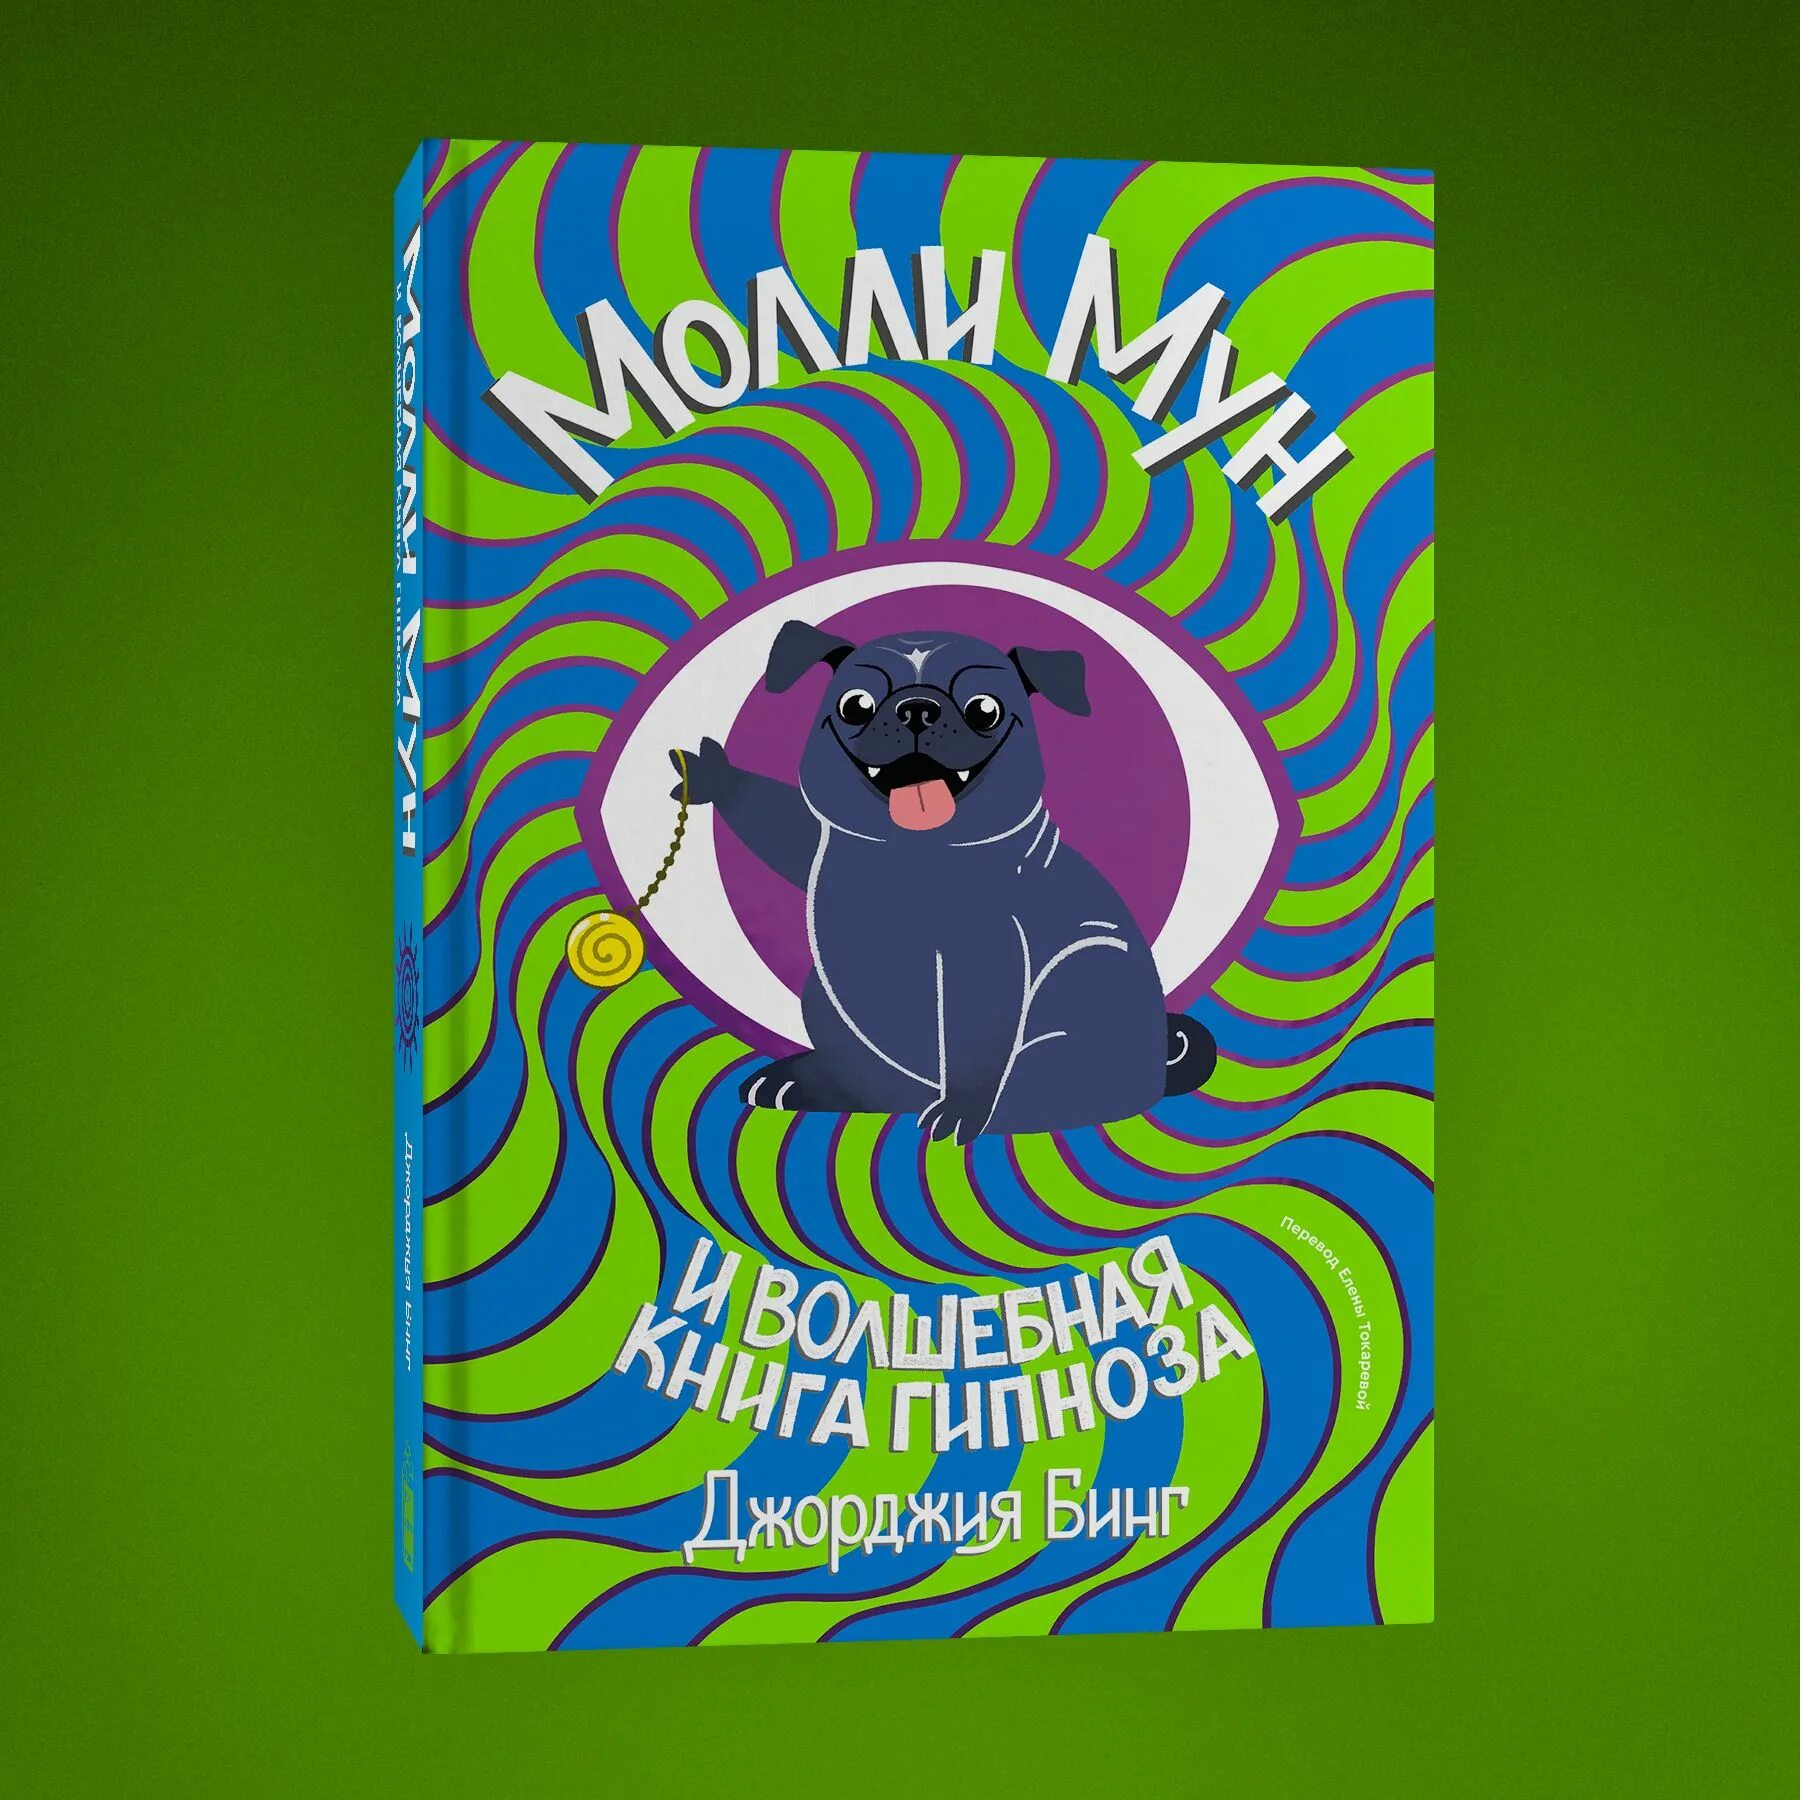 Джорджия бинг Молли Мун. Молли Мун и Волшебная книга гипноза (2015). Молли Мун книги. Молли мун и волшебная